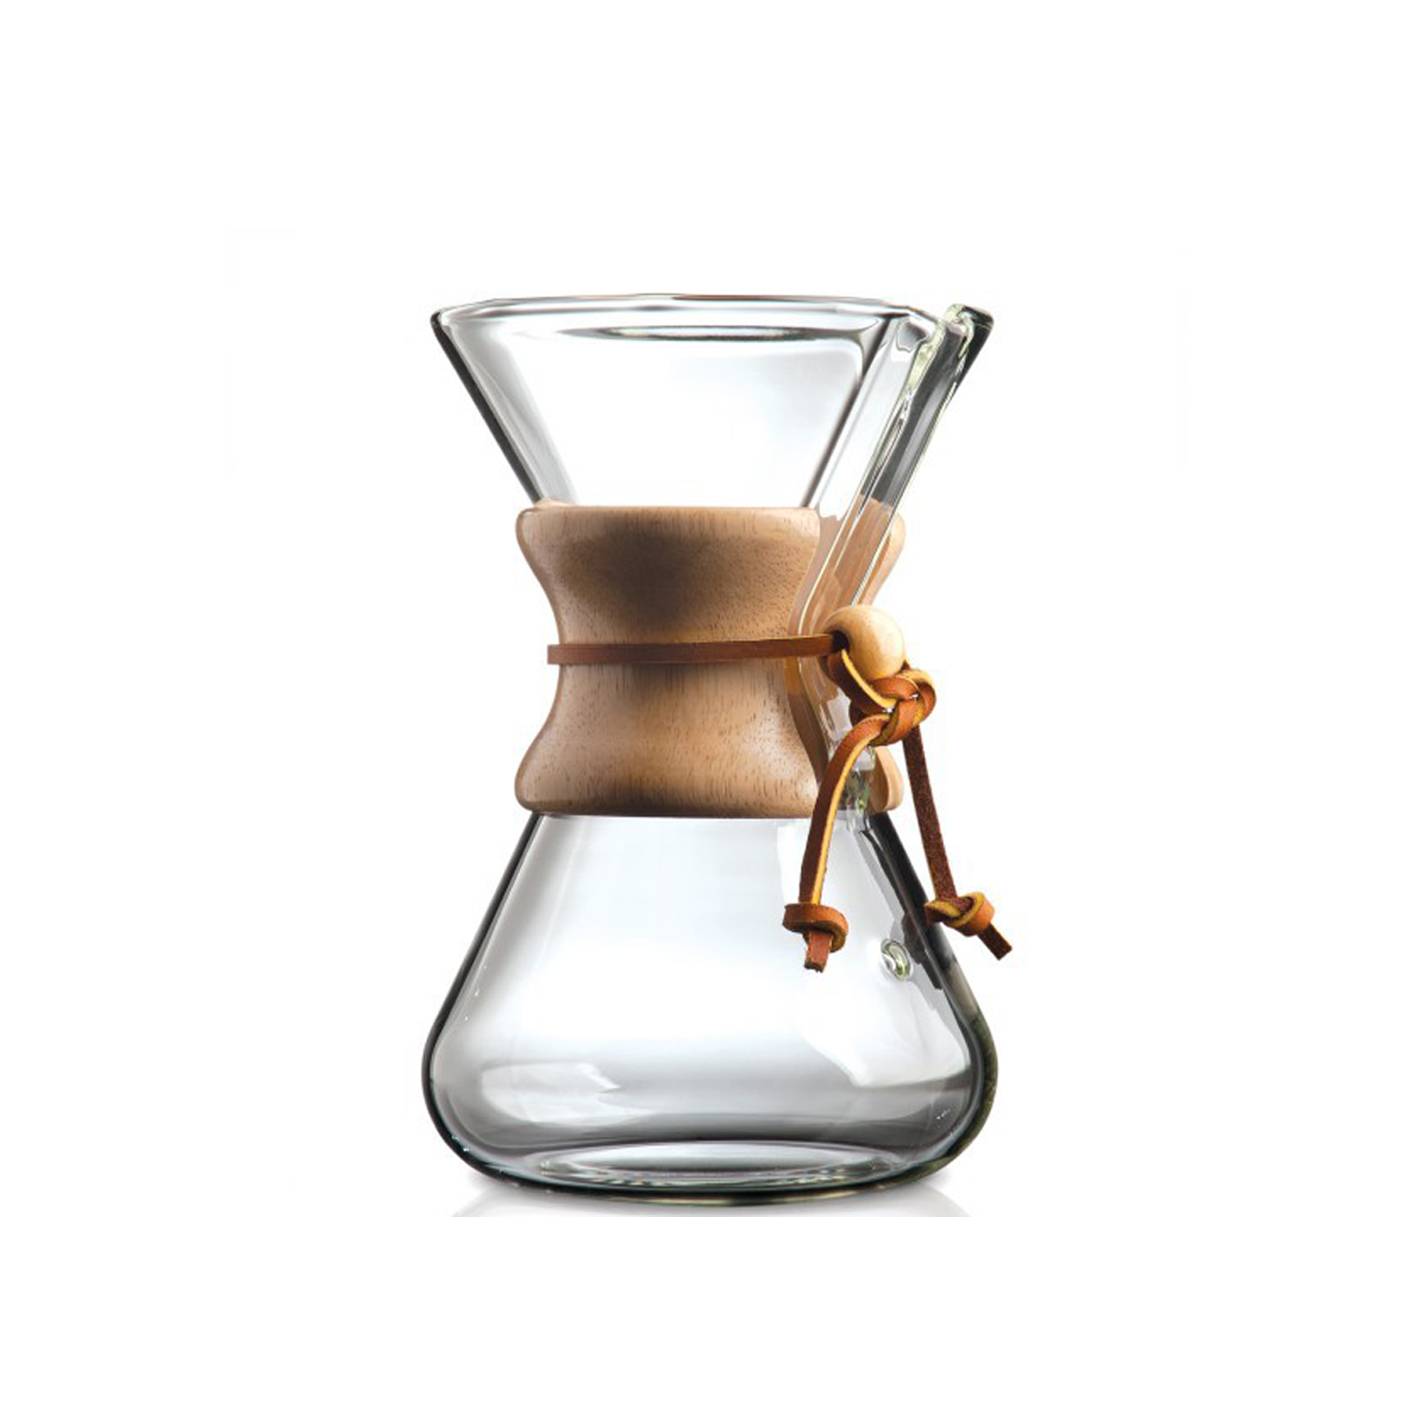 Кемекс для кофе, заваривание и использование фильтров, отличие от пуровера